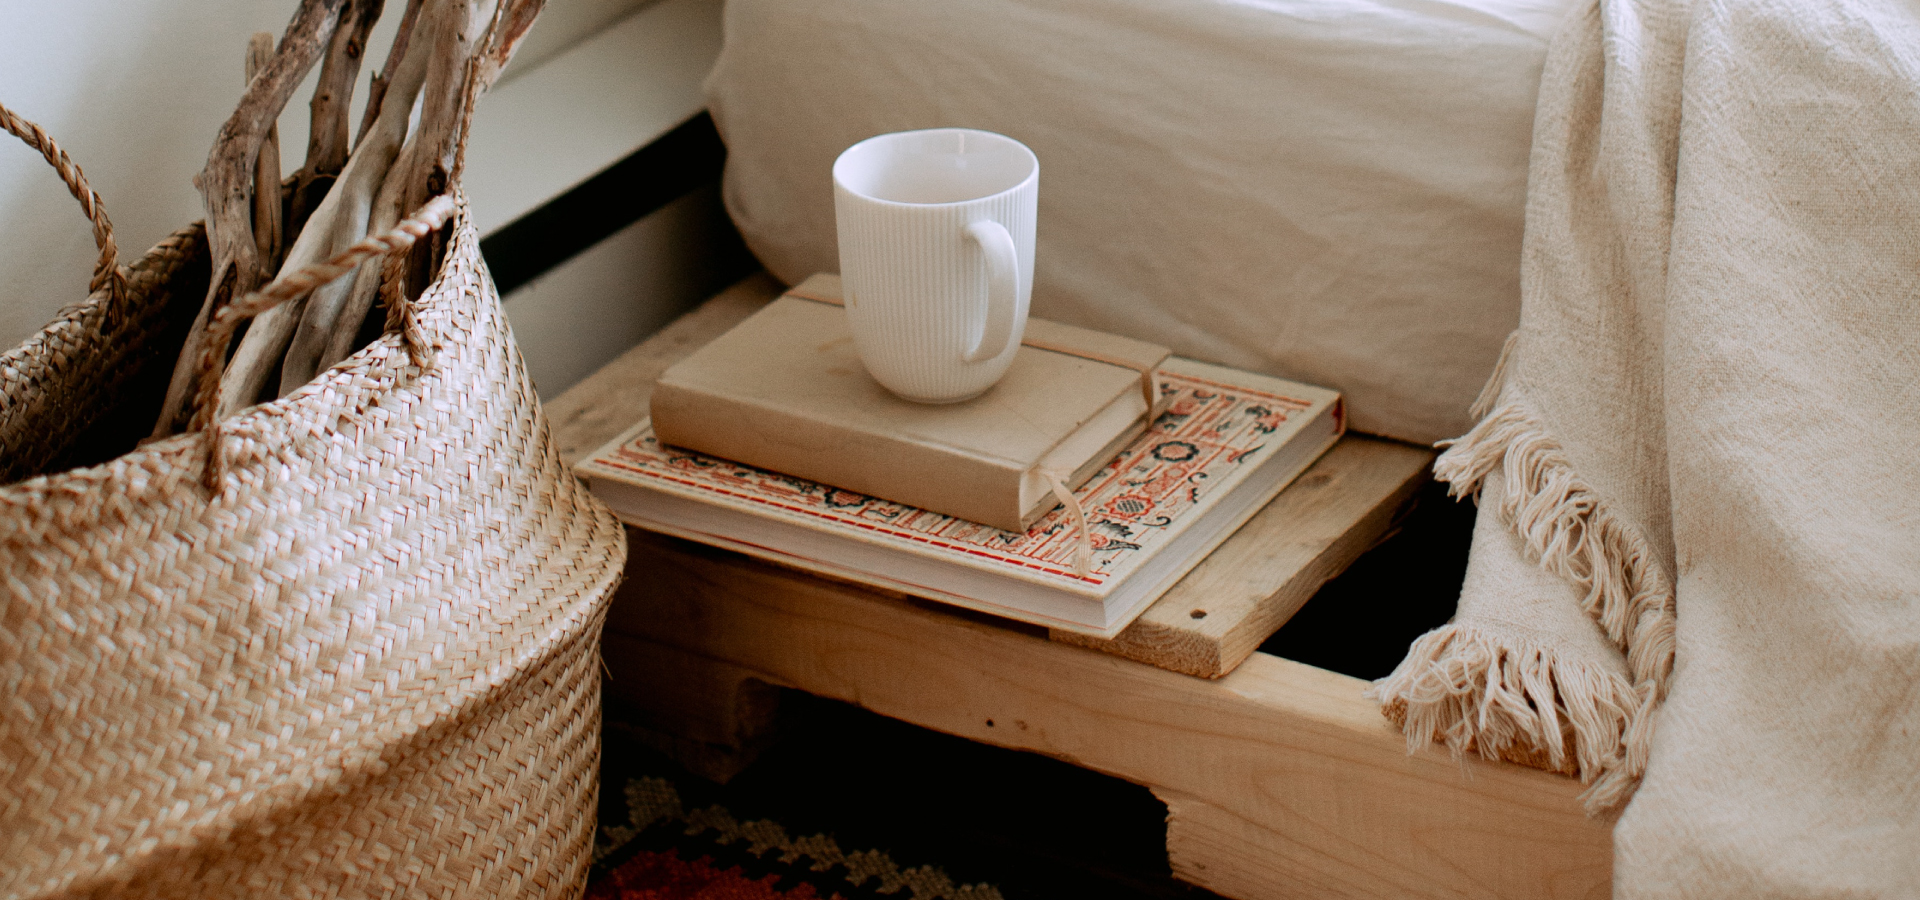 Zbliżenie na bok łóżka z białą pościelą, obok łóżka niski stolik nocny z książkami i kubkiem. Po lewej stronie kosz wiklinowy z suszkami.